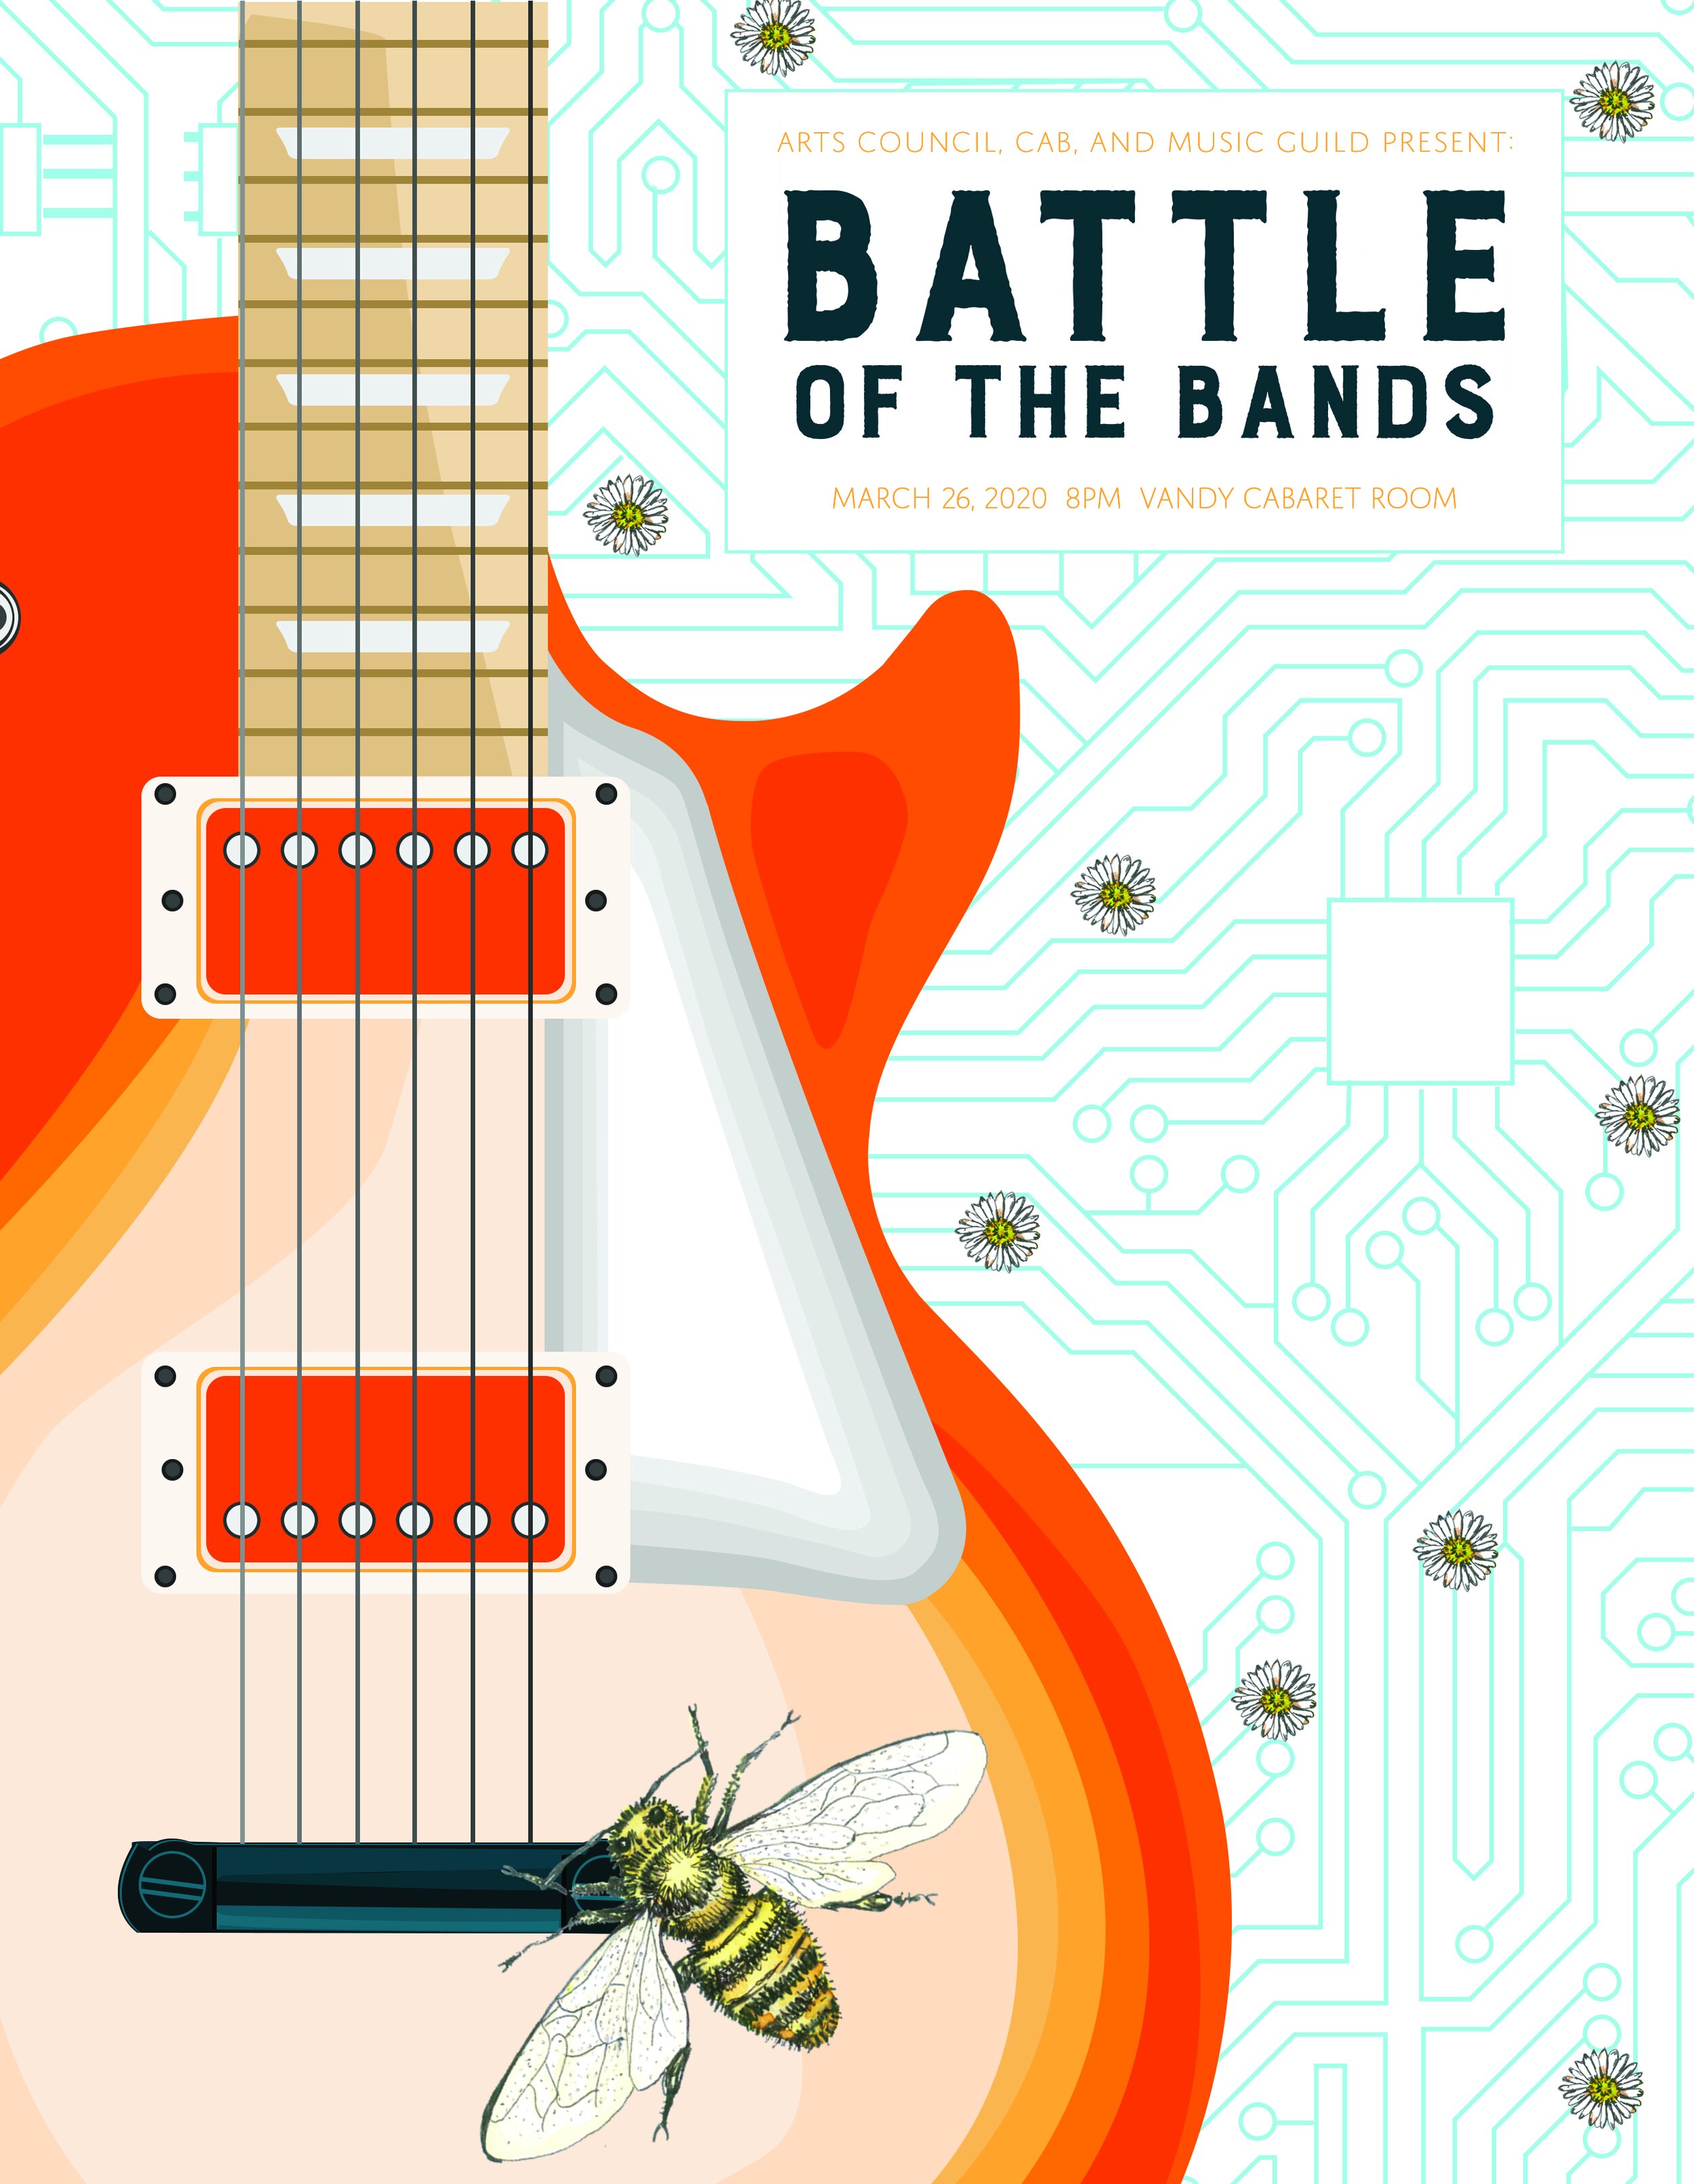  Battle of the Bands 2020 poster designed by Caroline Denning ’22 